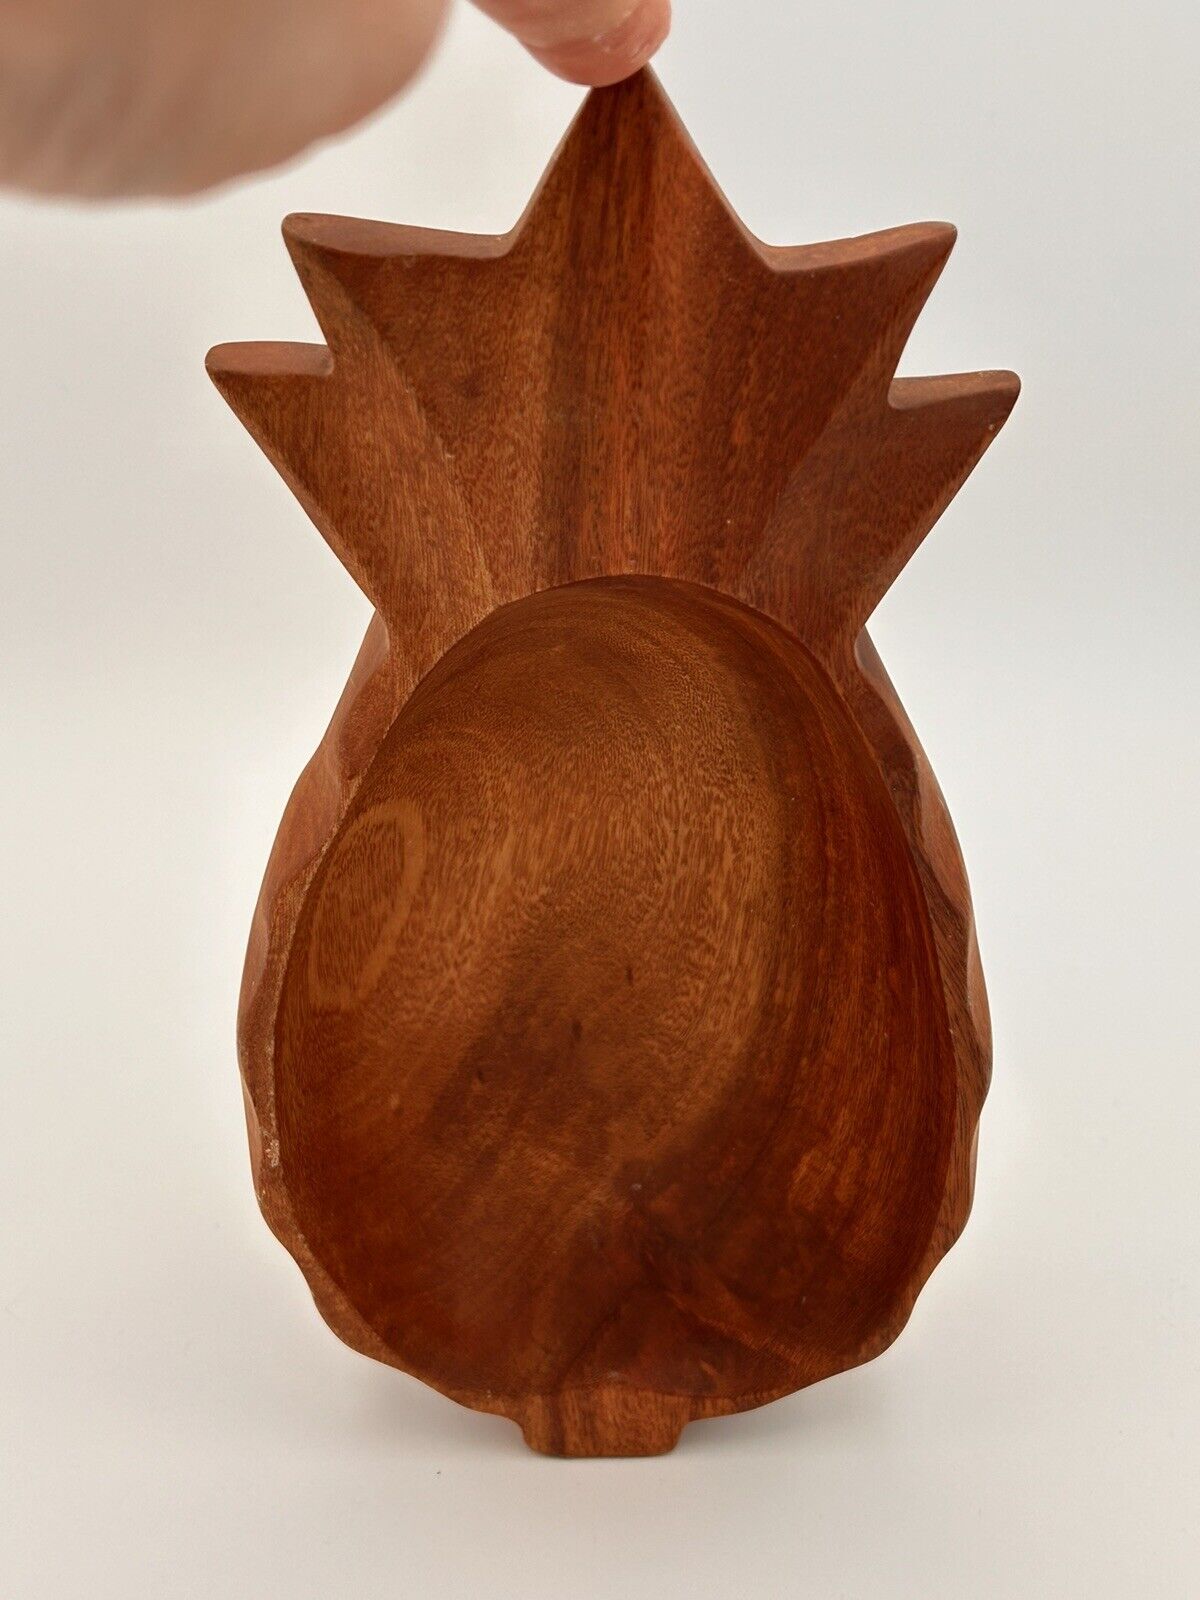 Tiki Vintage Hawaiian Kamani Wood Carved Pineapple Serving Bowl Trinket Dish